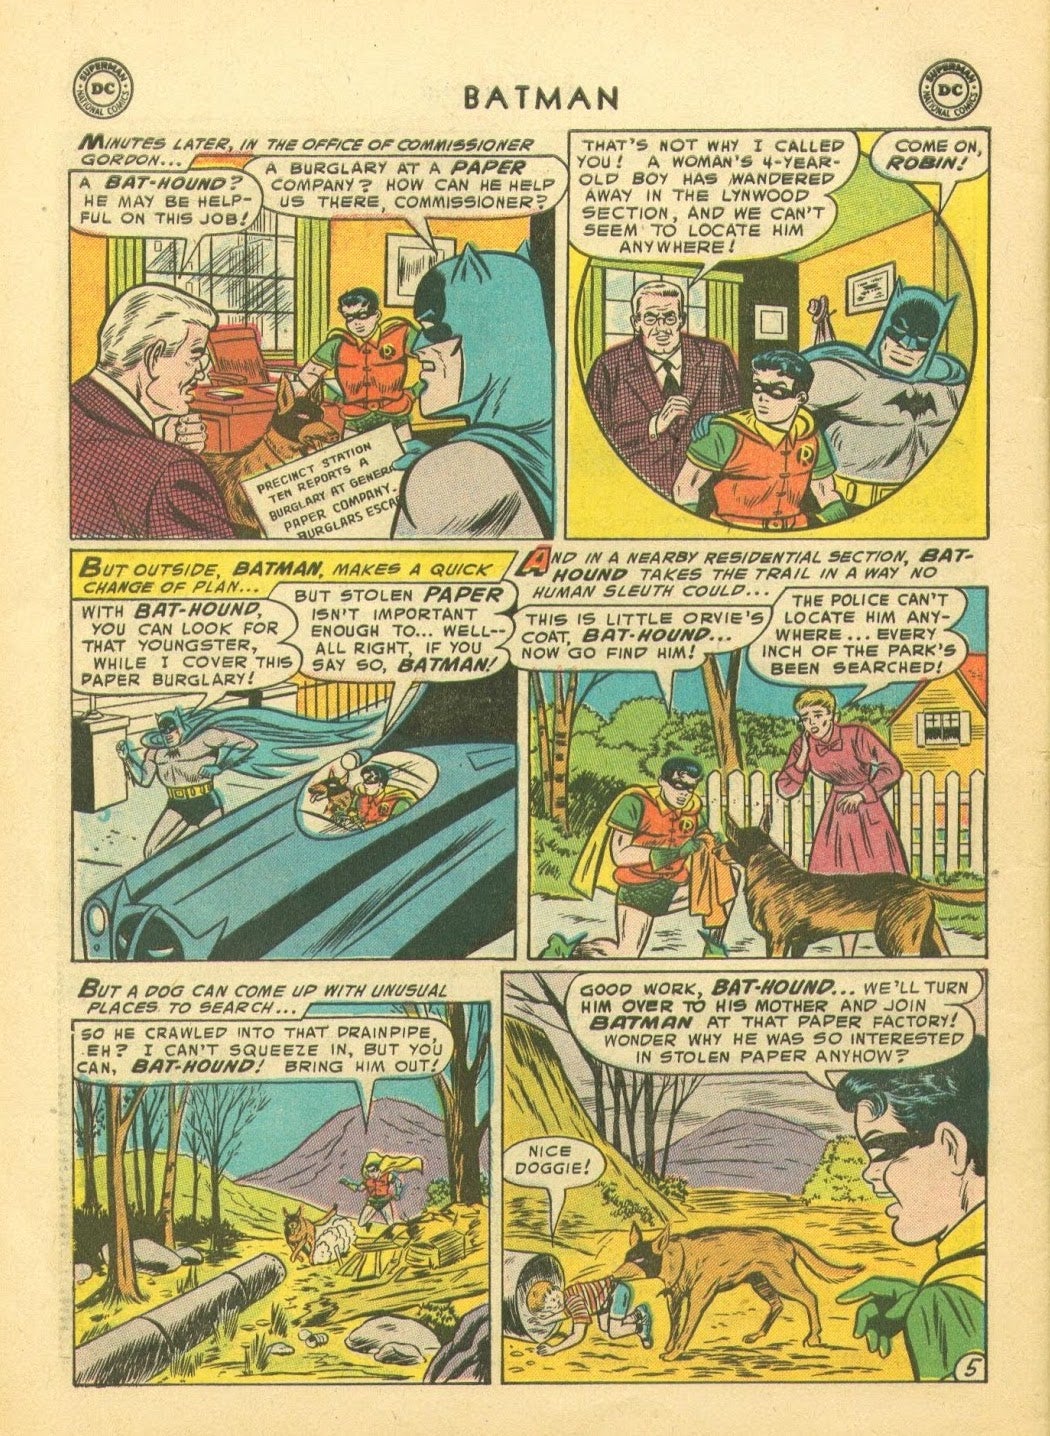 Batman #92 (Image: DC Comics)